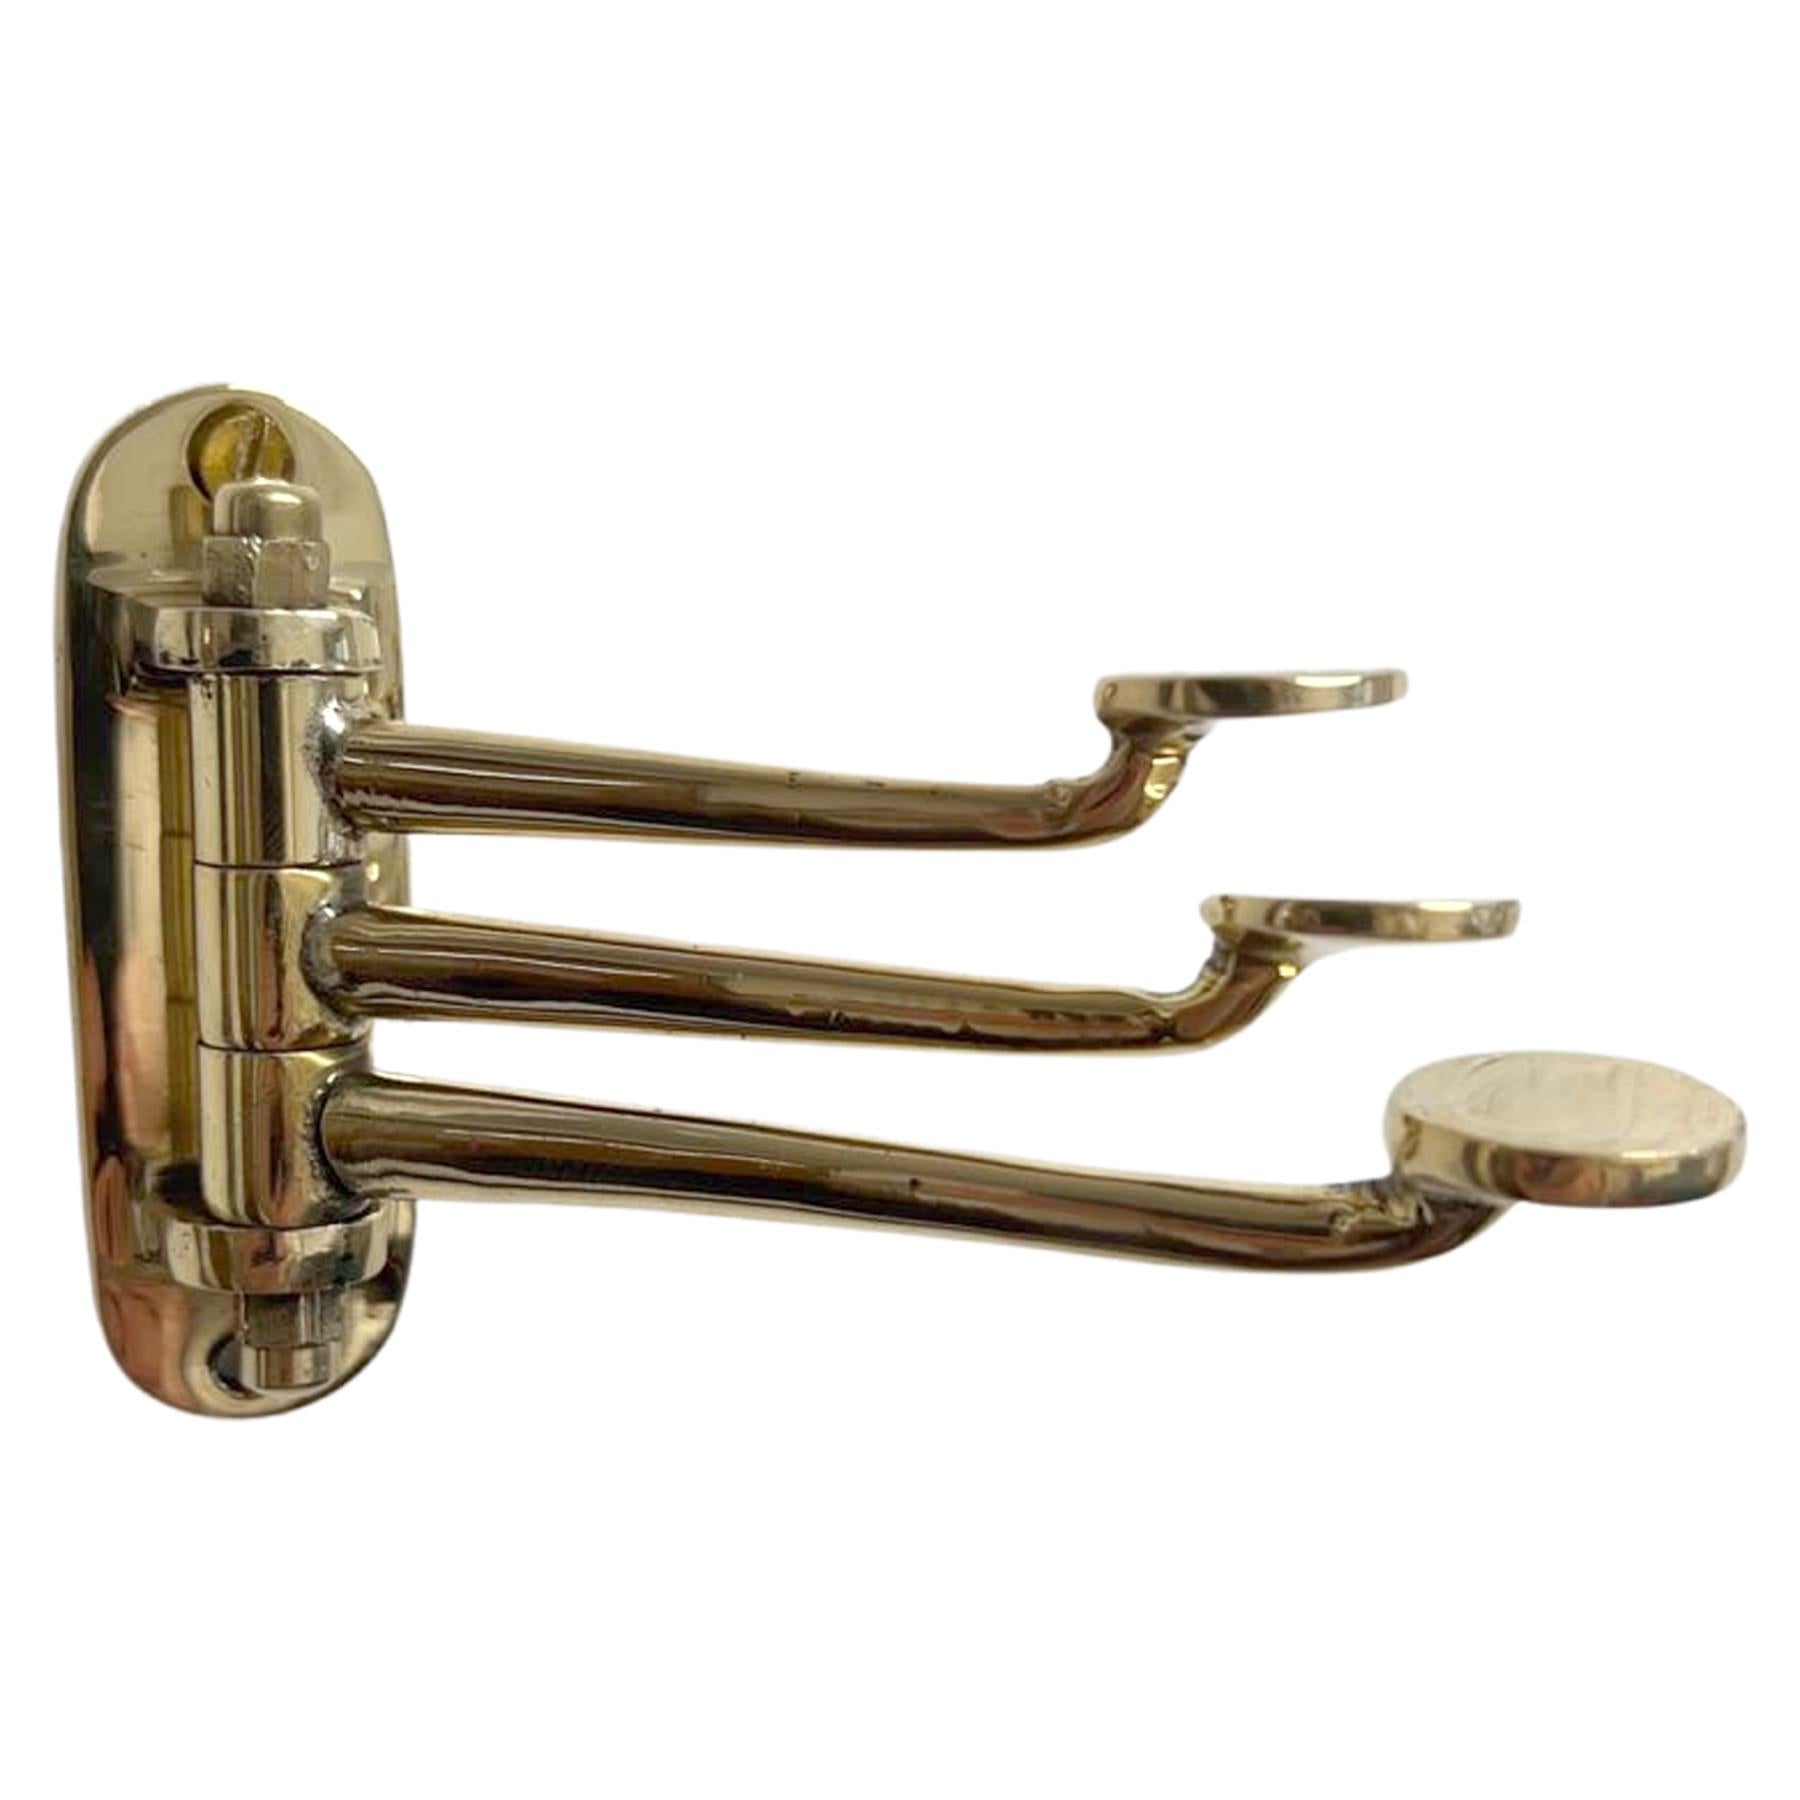 Three-way Folding Coat Hook, Polished brass finish